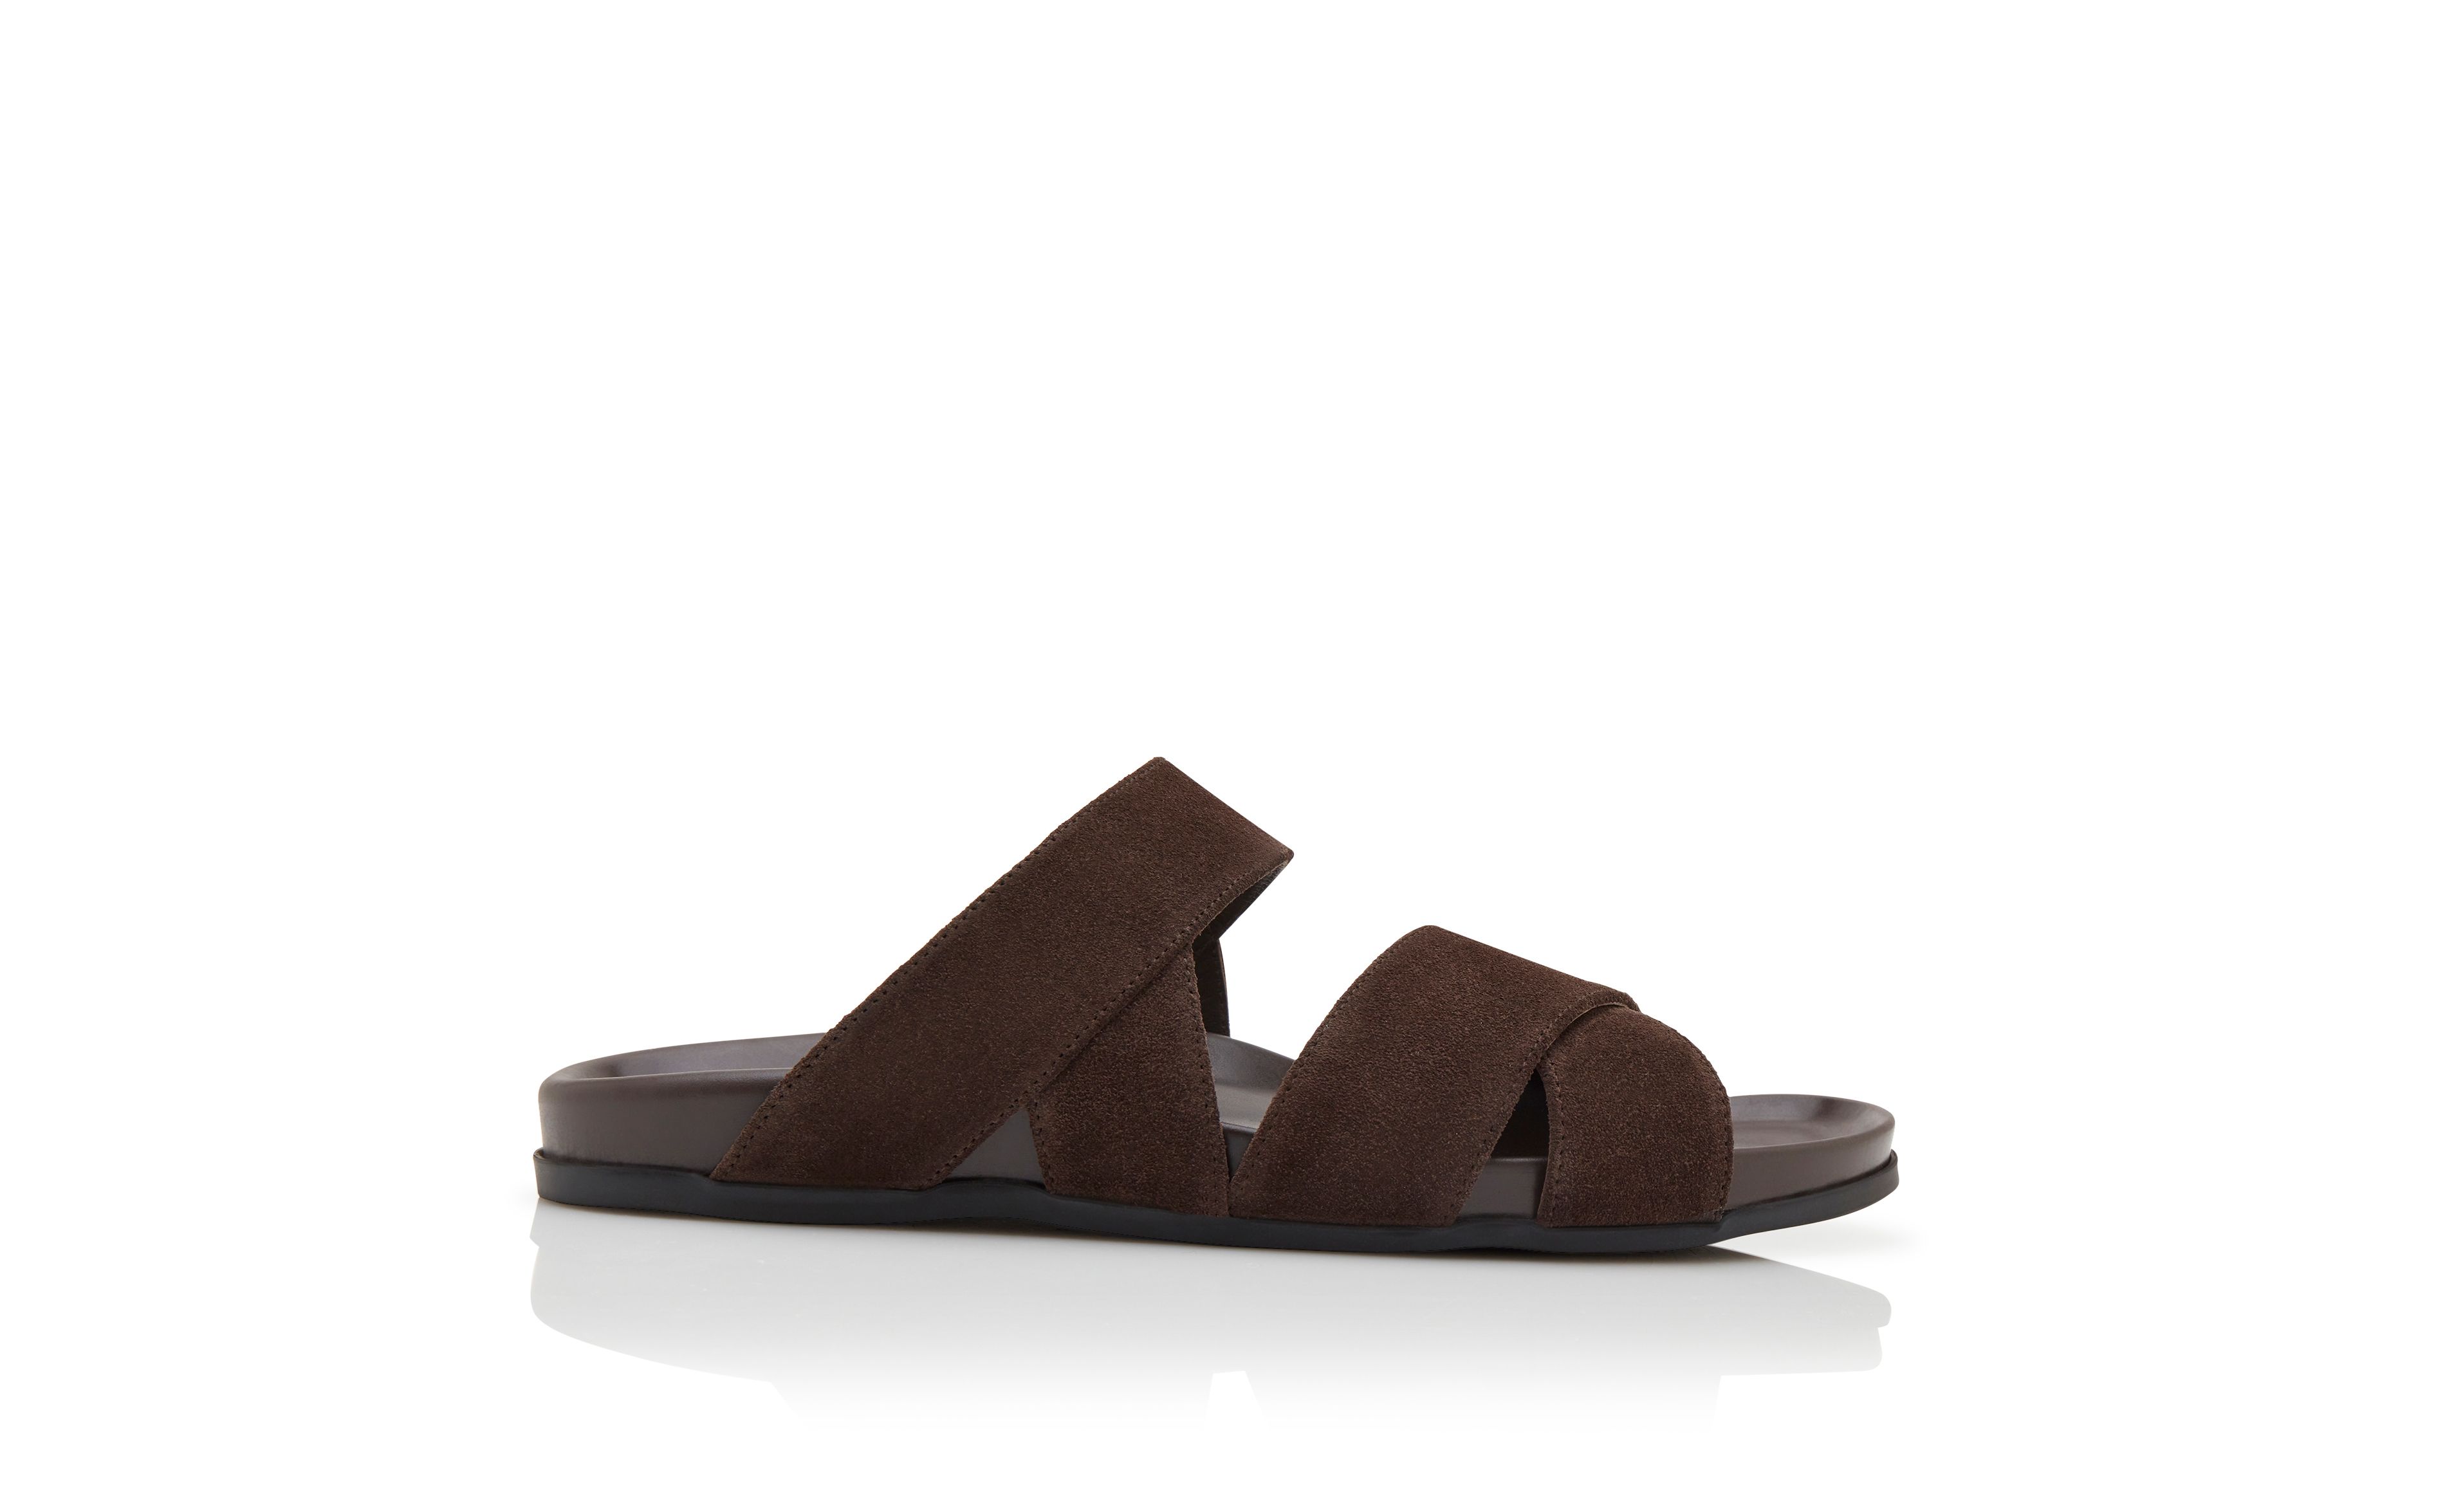 Designer Dark Brown Suede Sandals - Image Side View